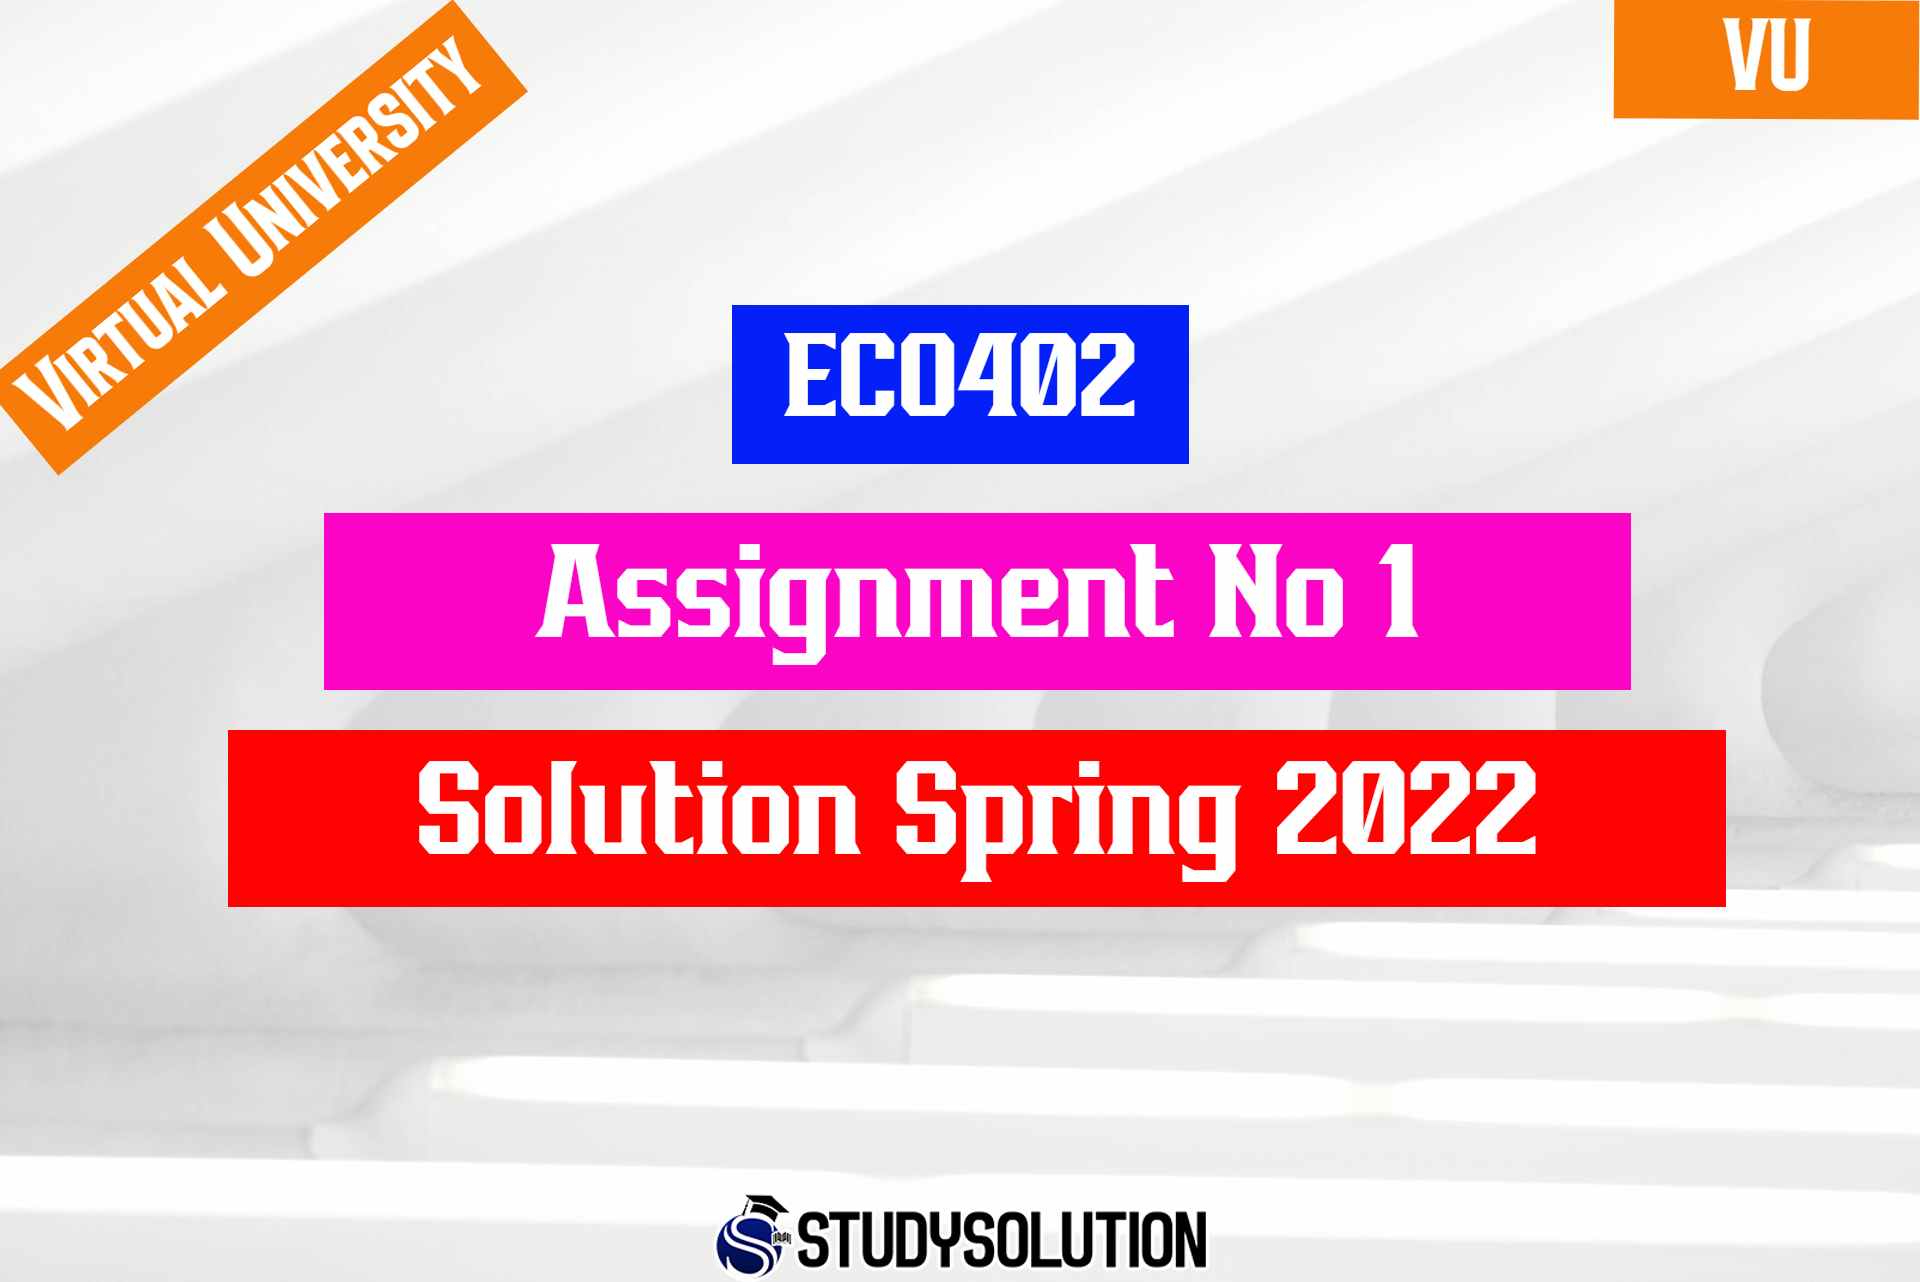 ECO402 Assignment No 1 Solution Spring 2022